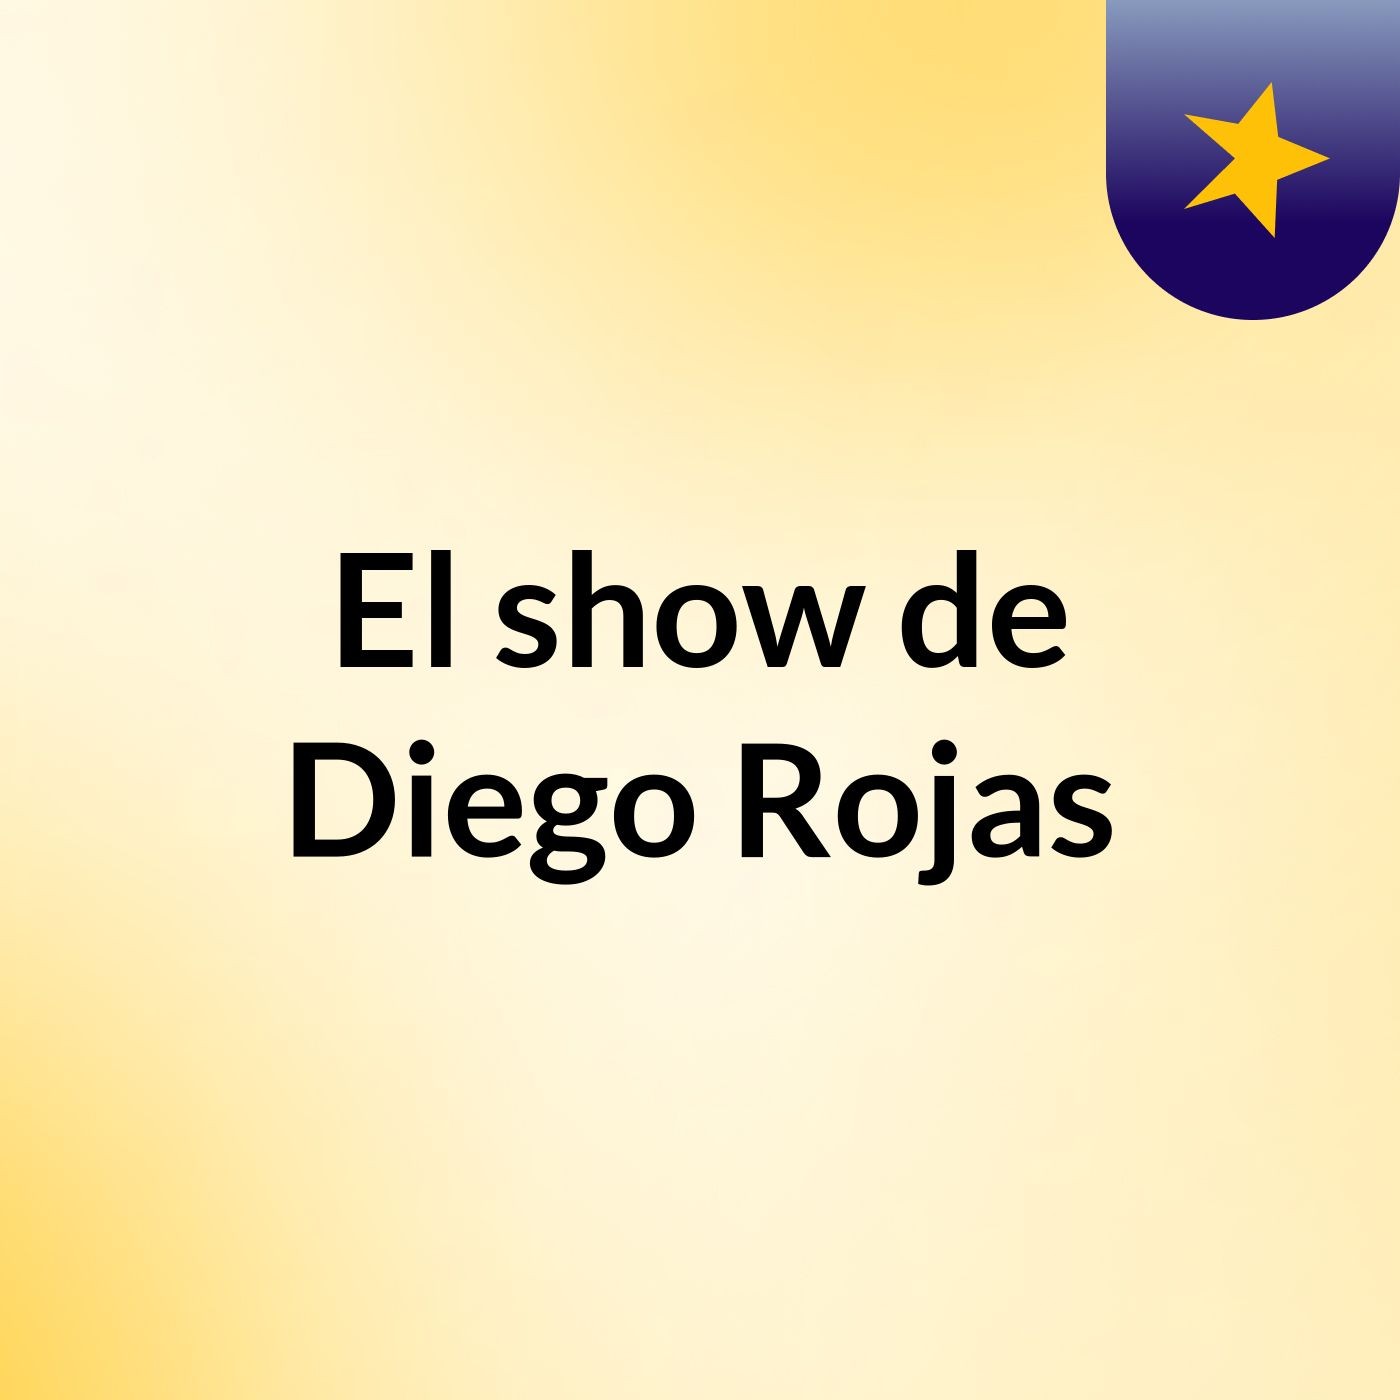 El show de Diego Rojas